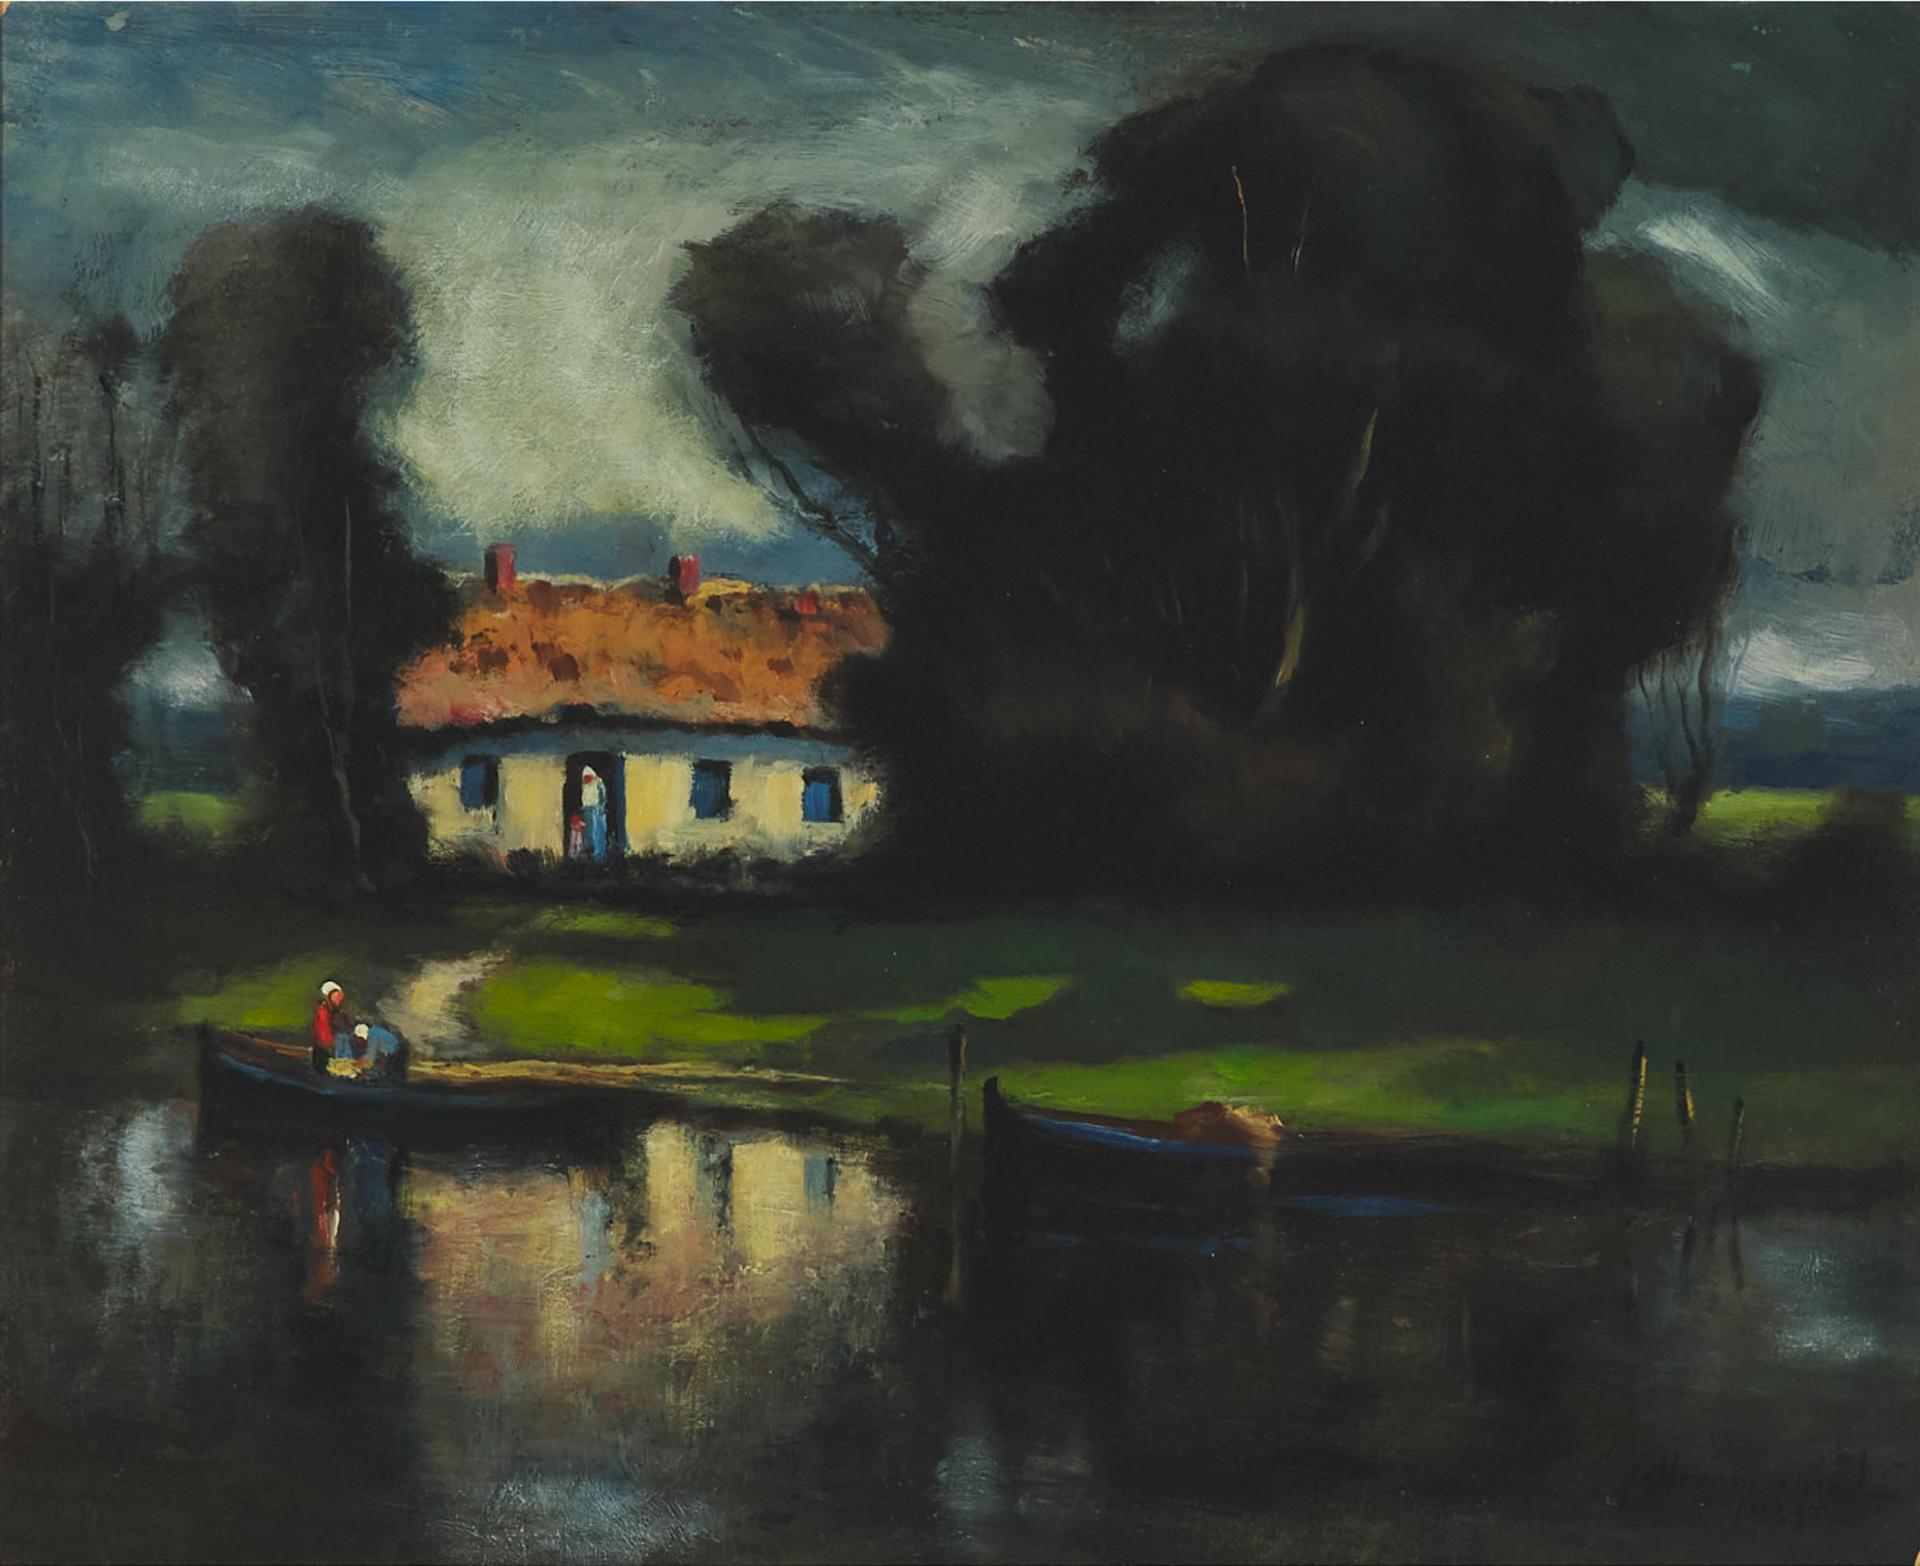 John A. Hammond (1843-1939) - Willow Cottage, 1933